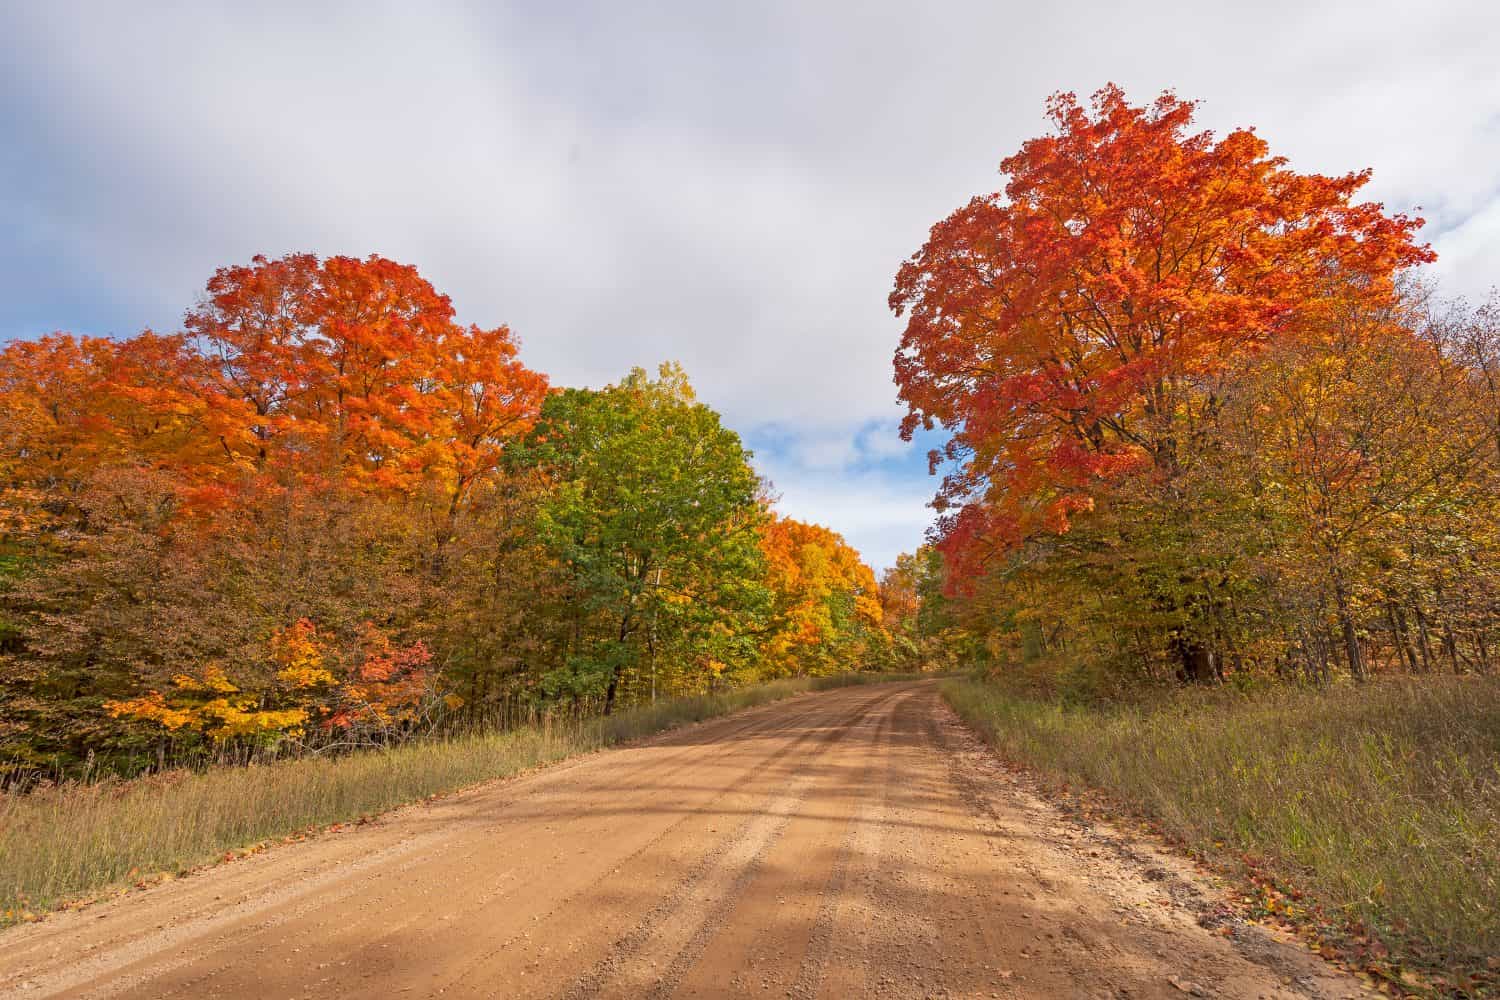 Rural Road in the Autumn Forest near Vanderbilt, Michigan